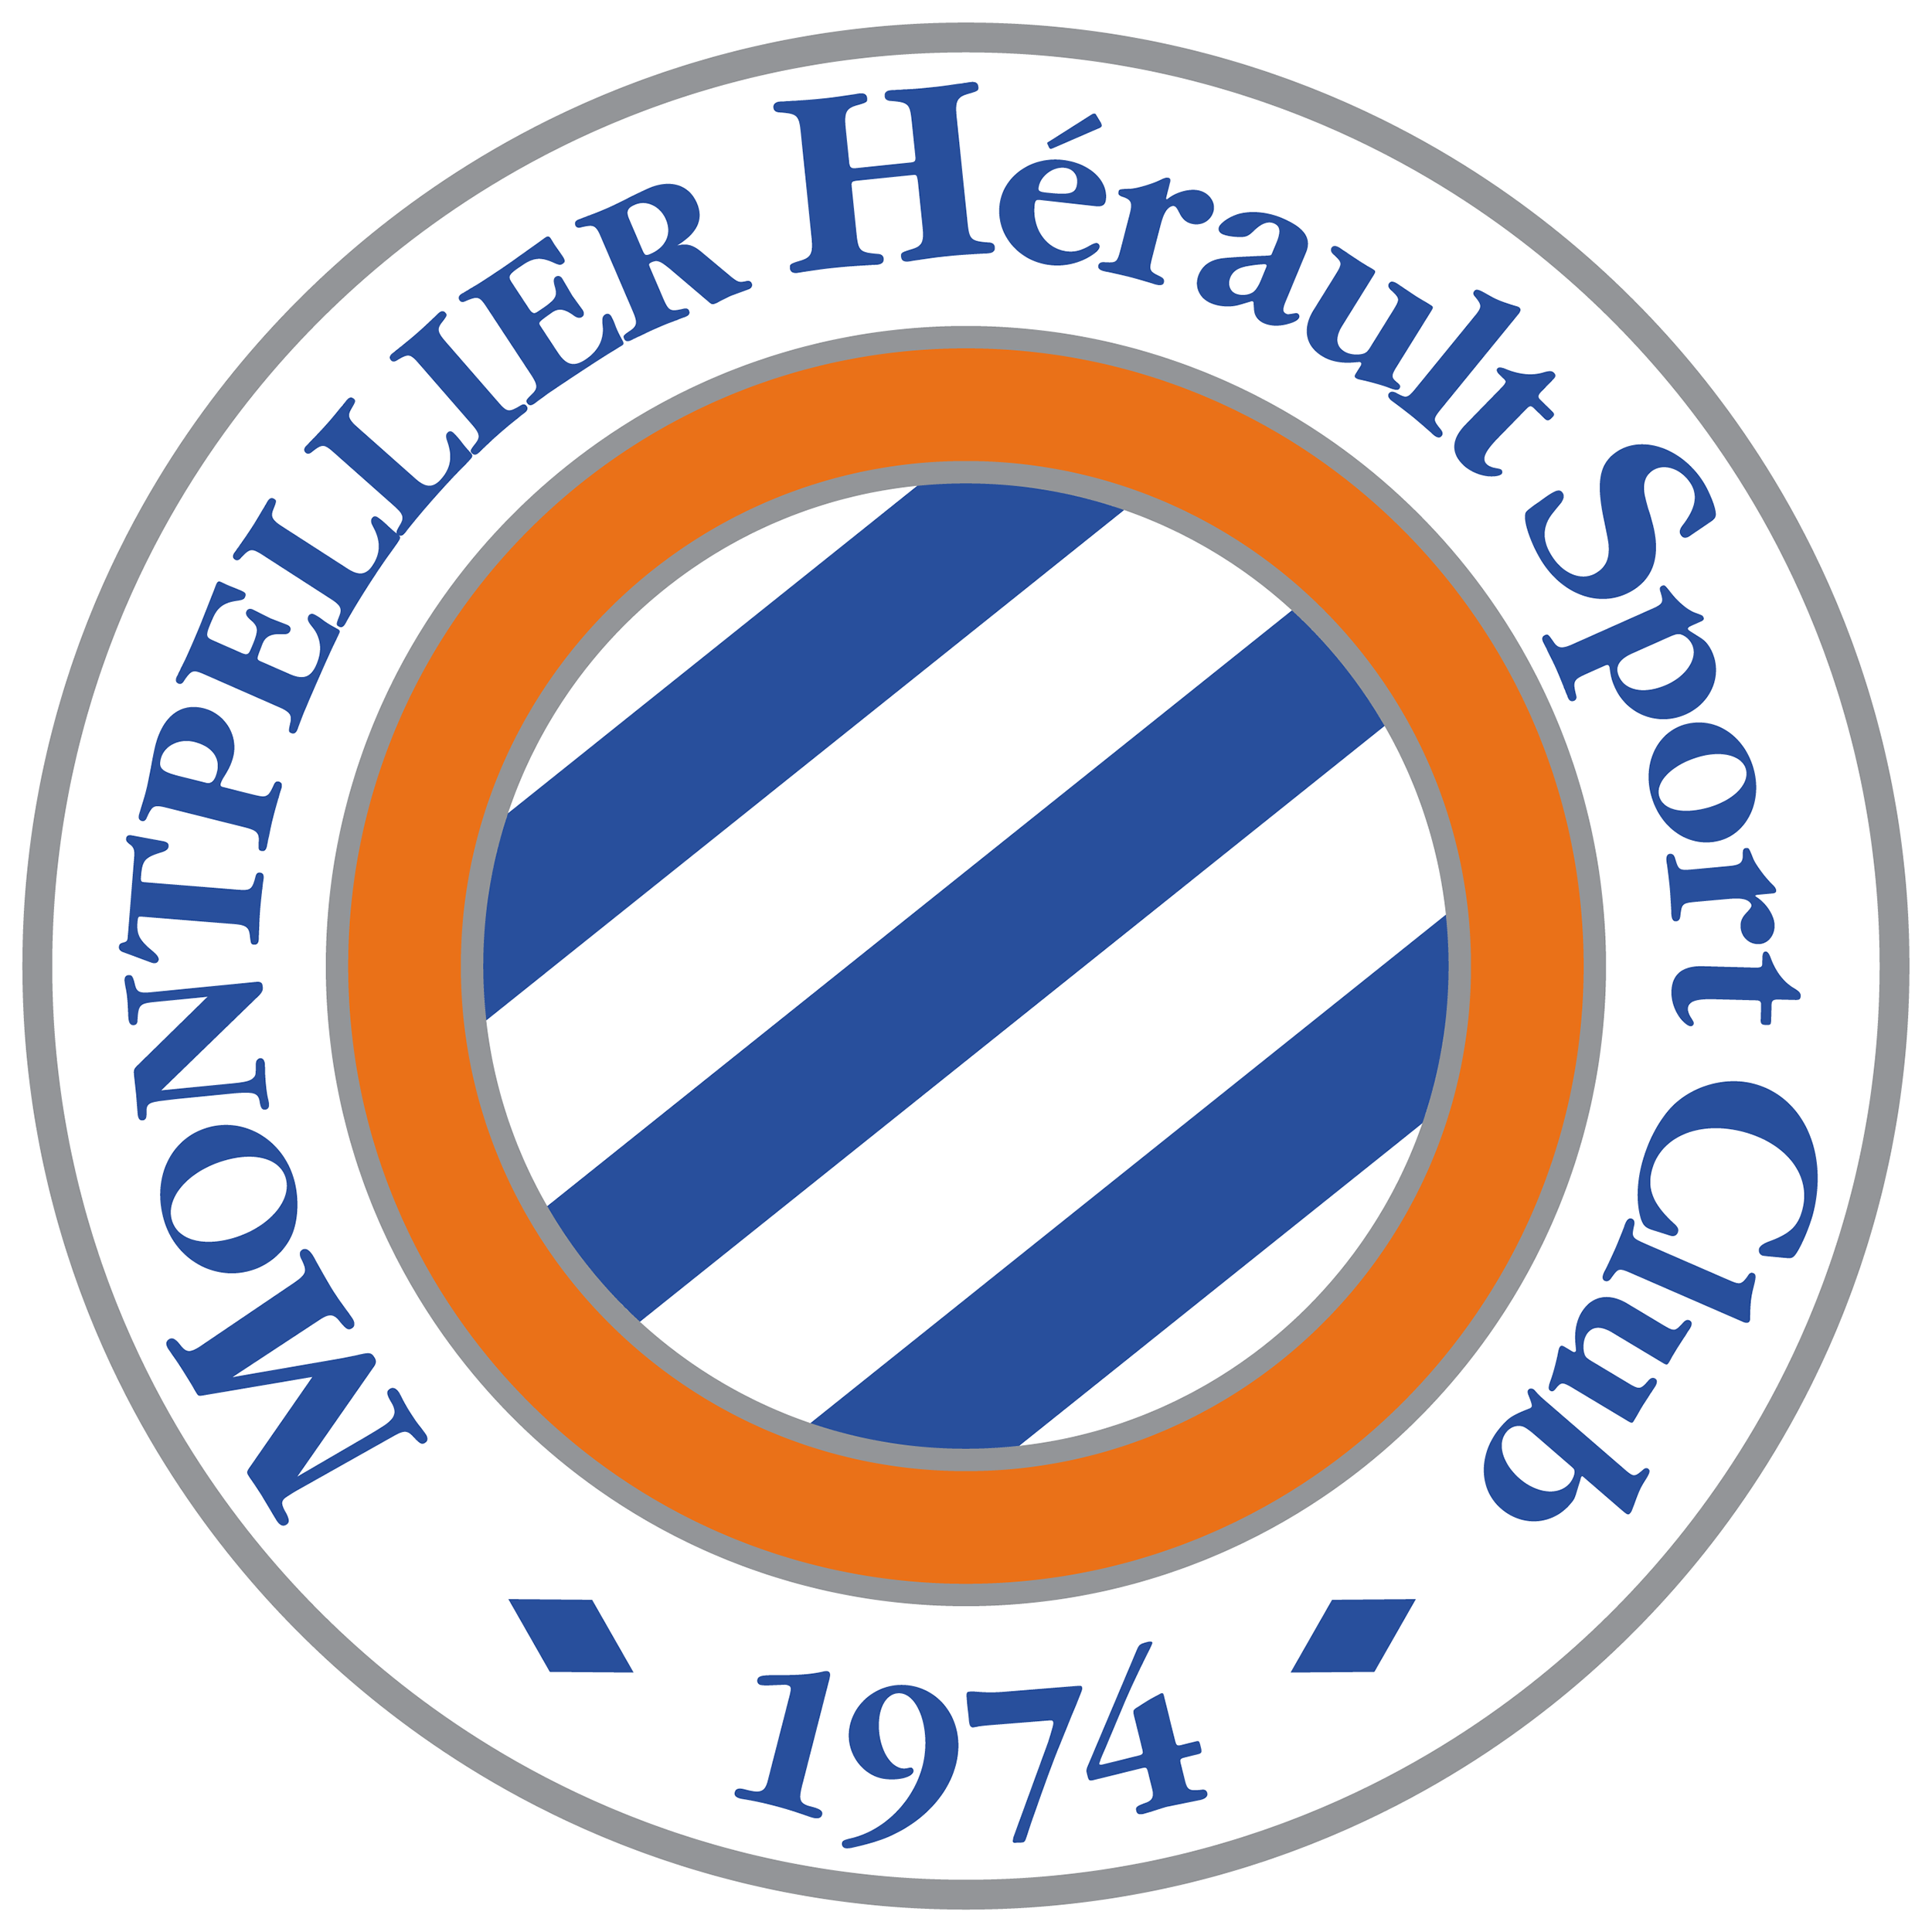 Montpellier (w) team logo